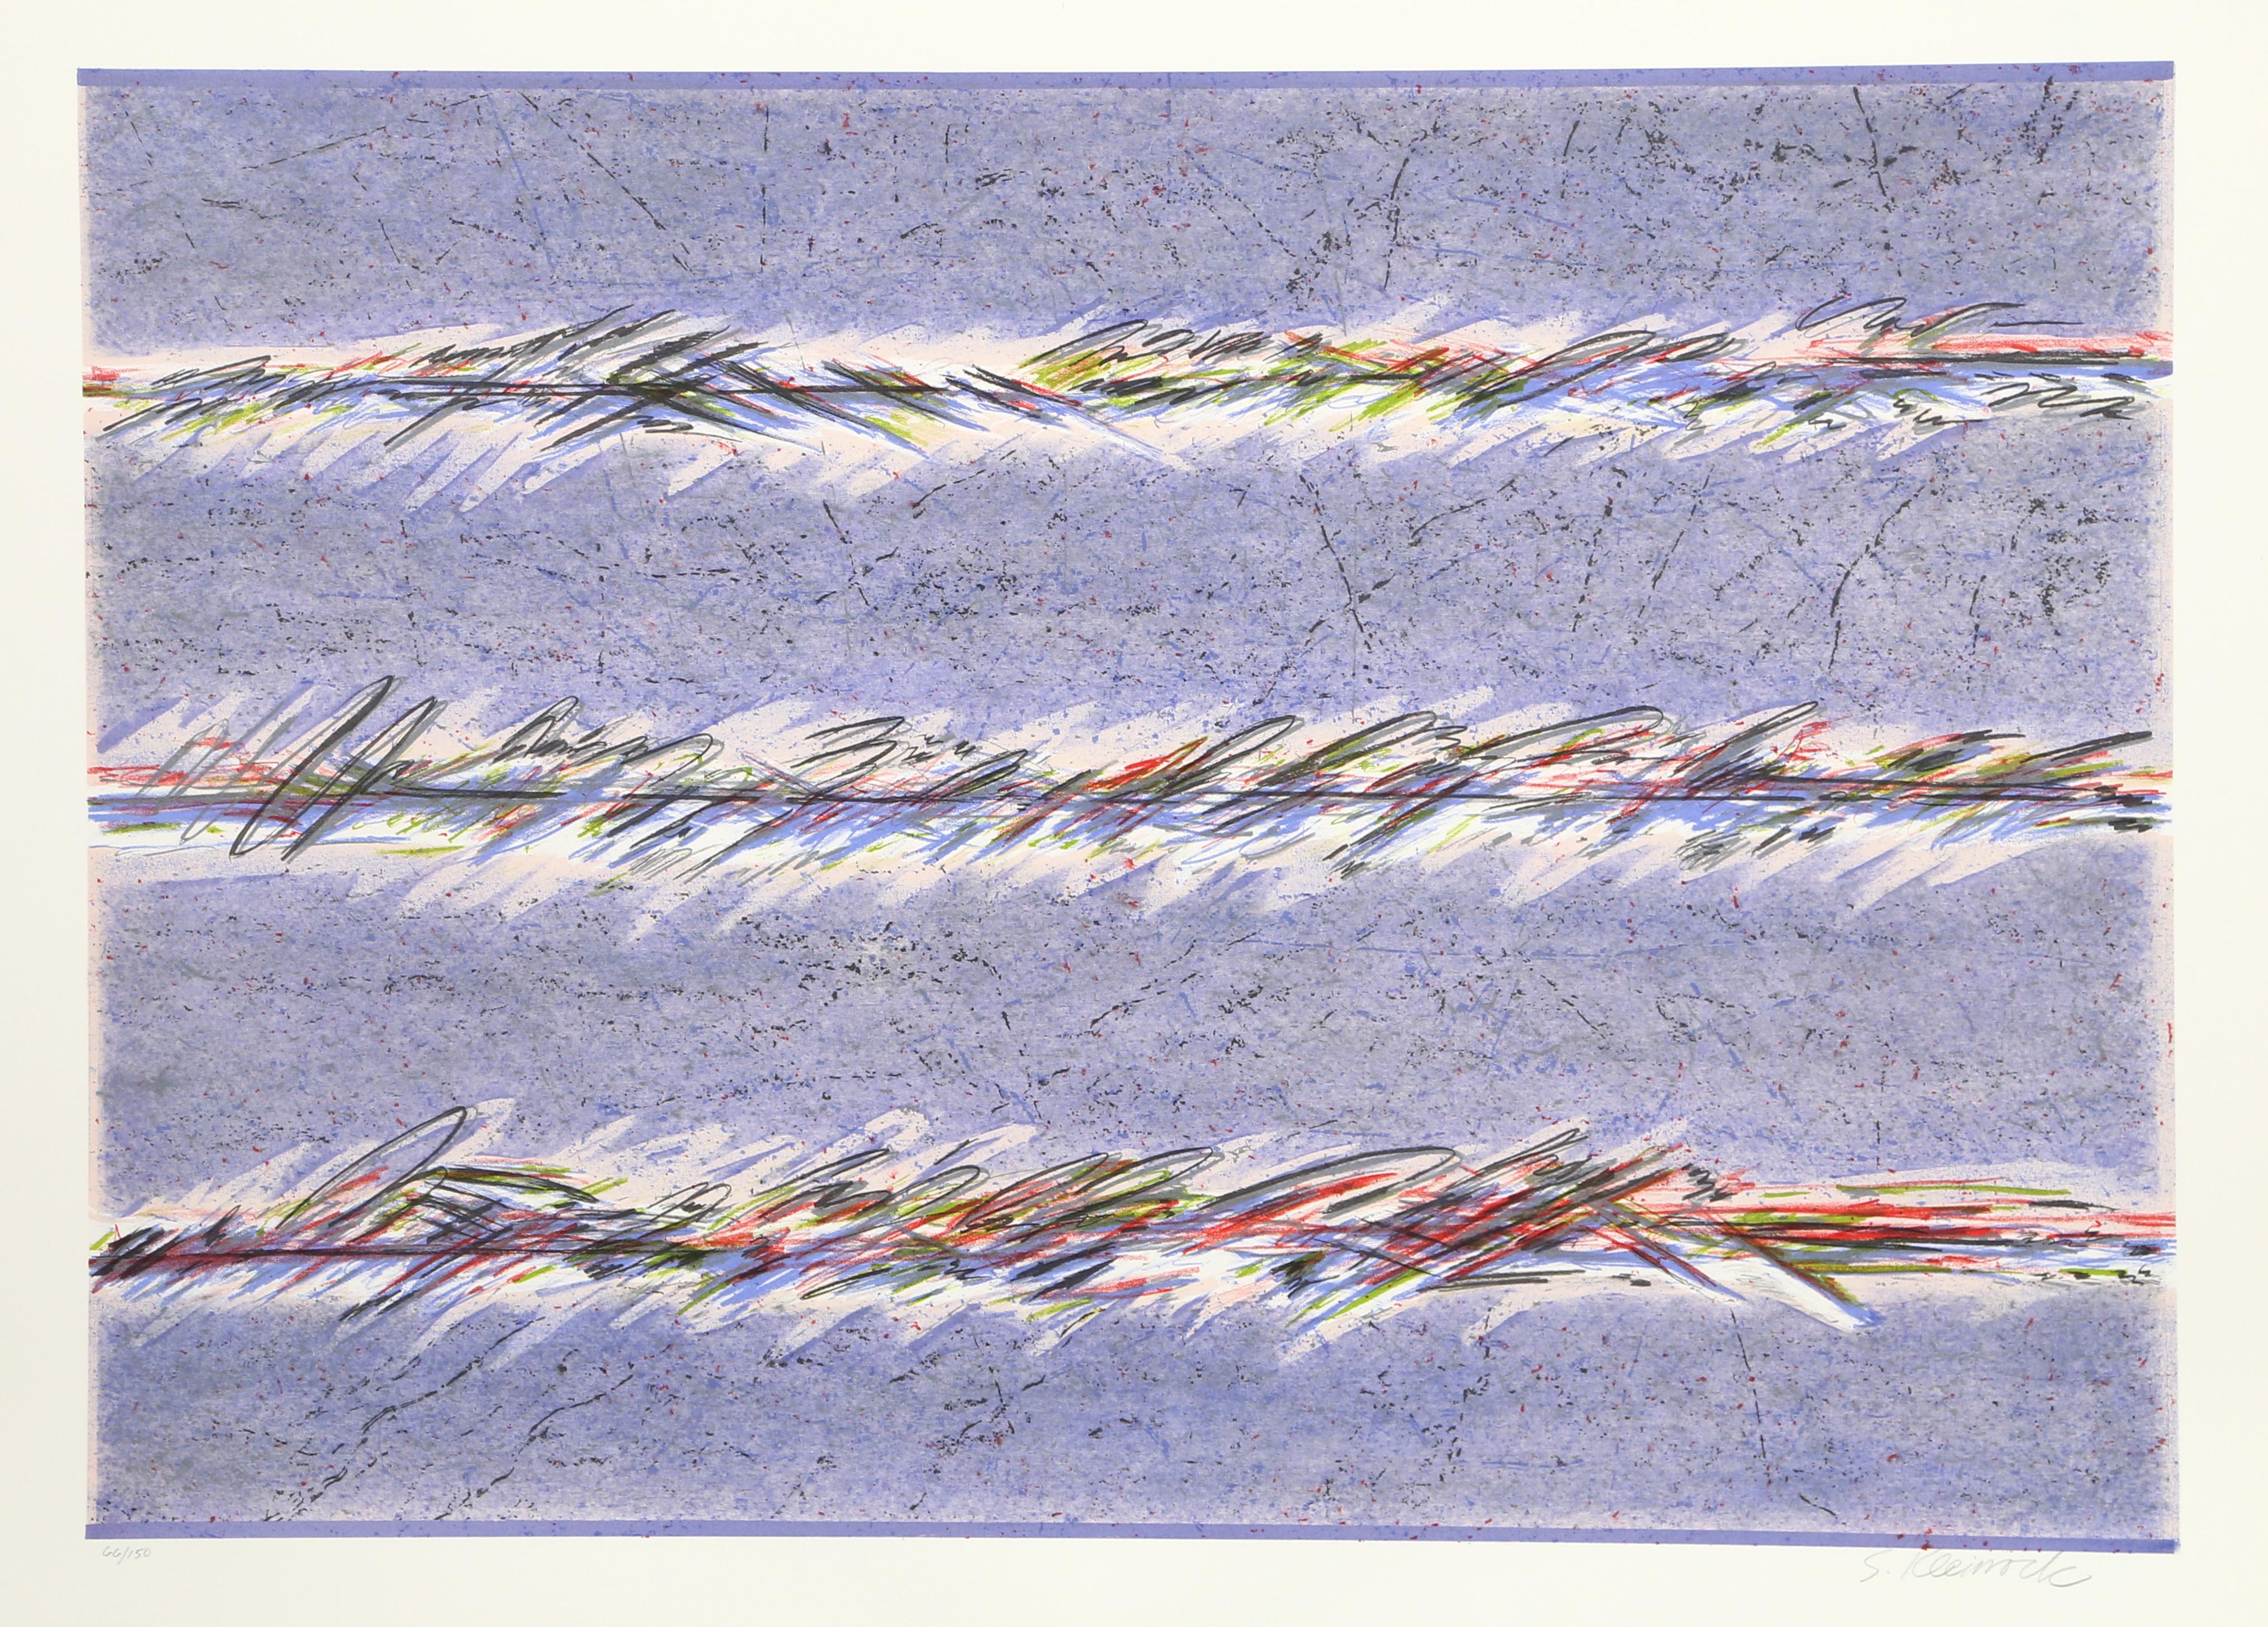 Dreamfields (Lila)
Sybil Kleinrock, Amerikanerin
Datum: ca. 1978
Lithographie, mit Bleistift signiert und nummeriert
Auflage von 150 Stück
Größe: 21,5 x 29 Zoll (54,61 x 73,66 cm)